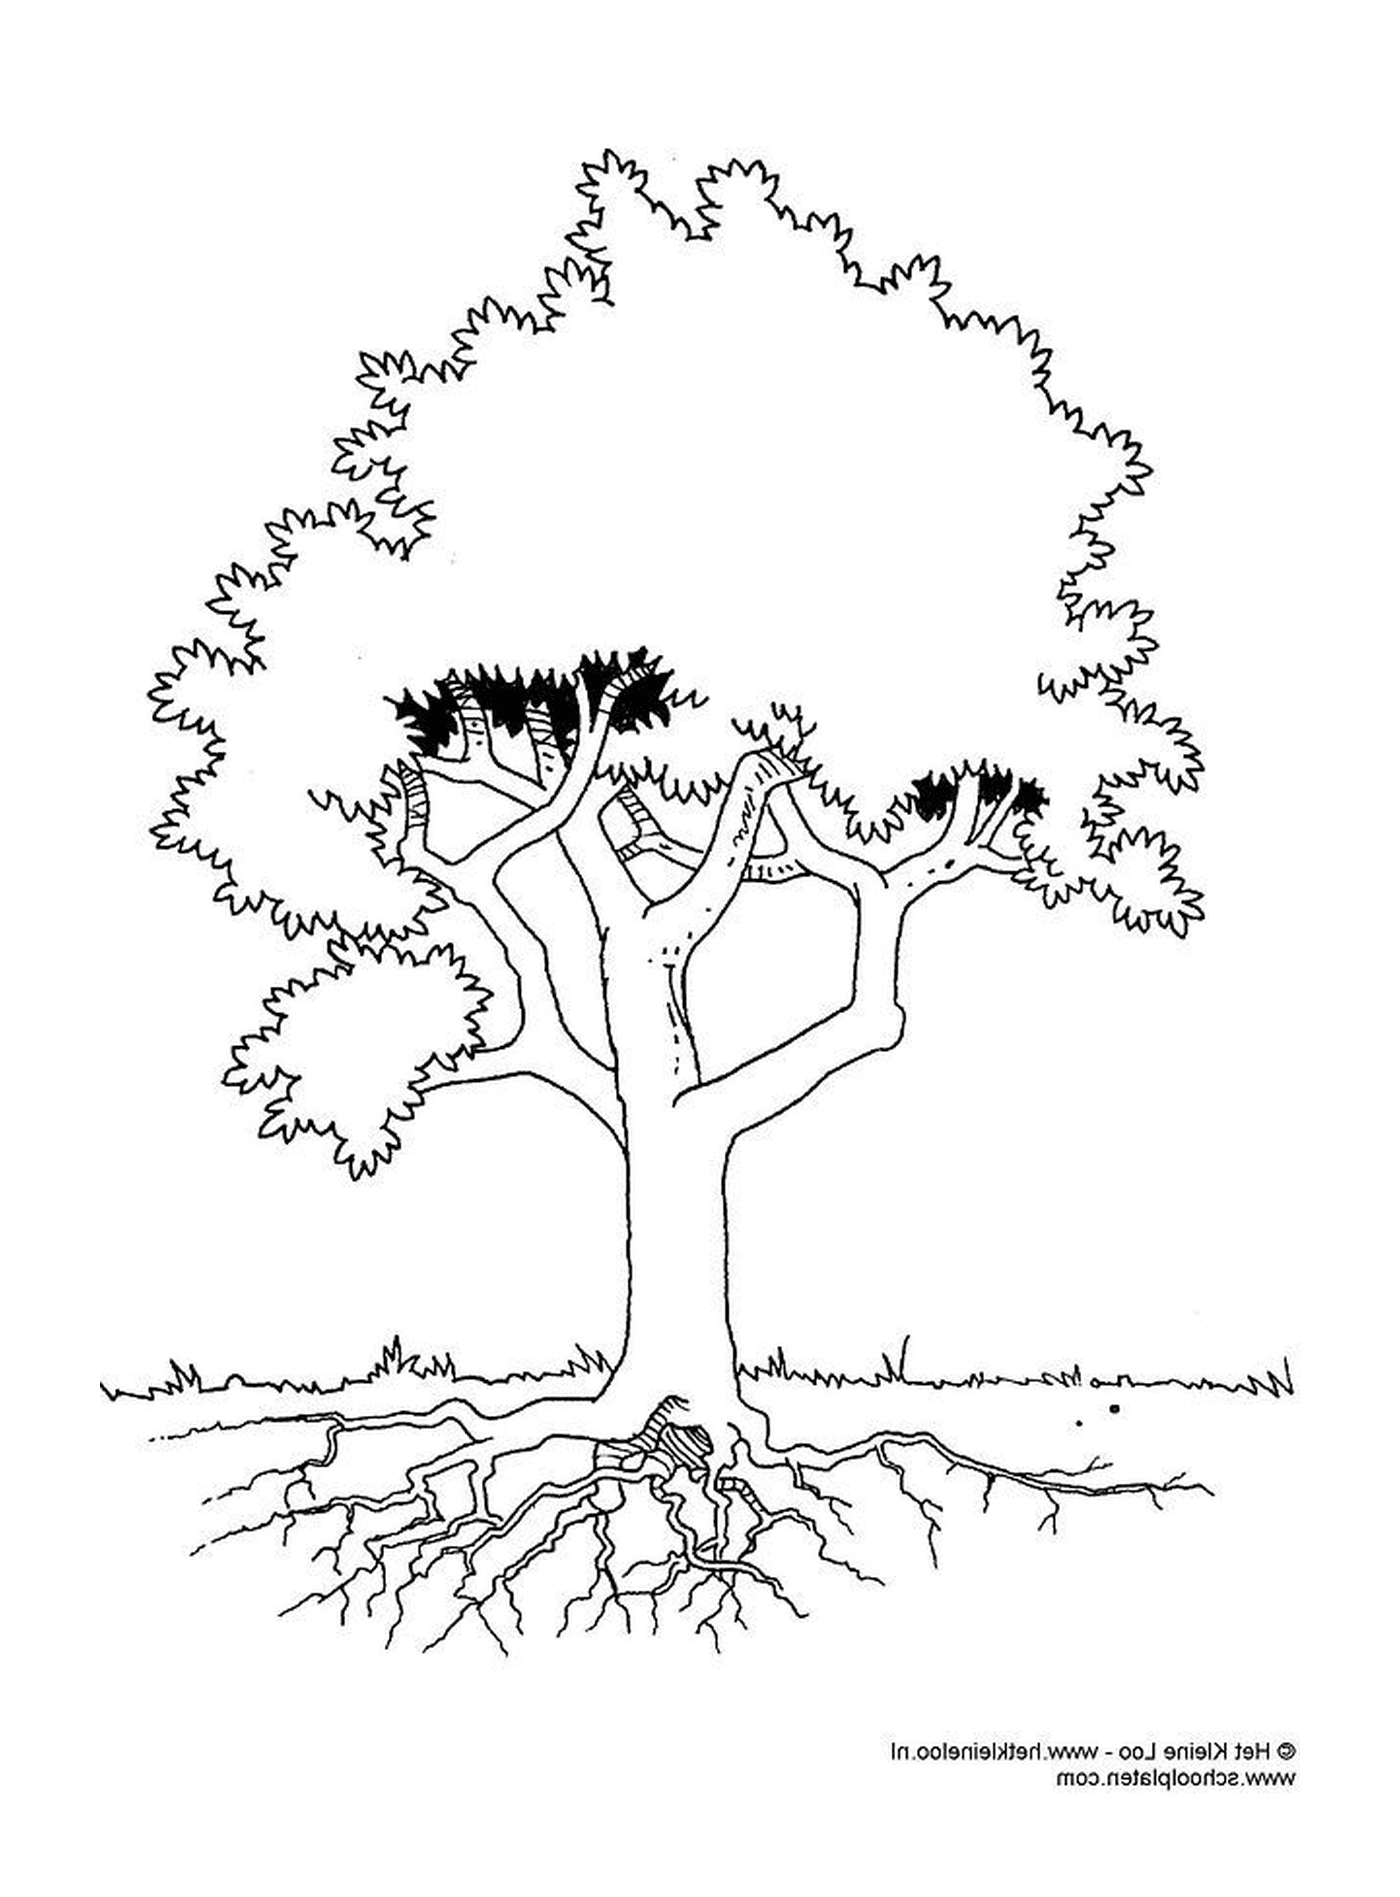  Дерево с корнями 